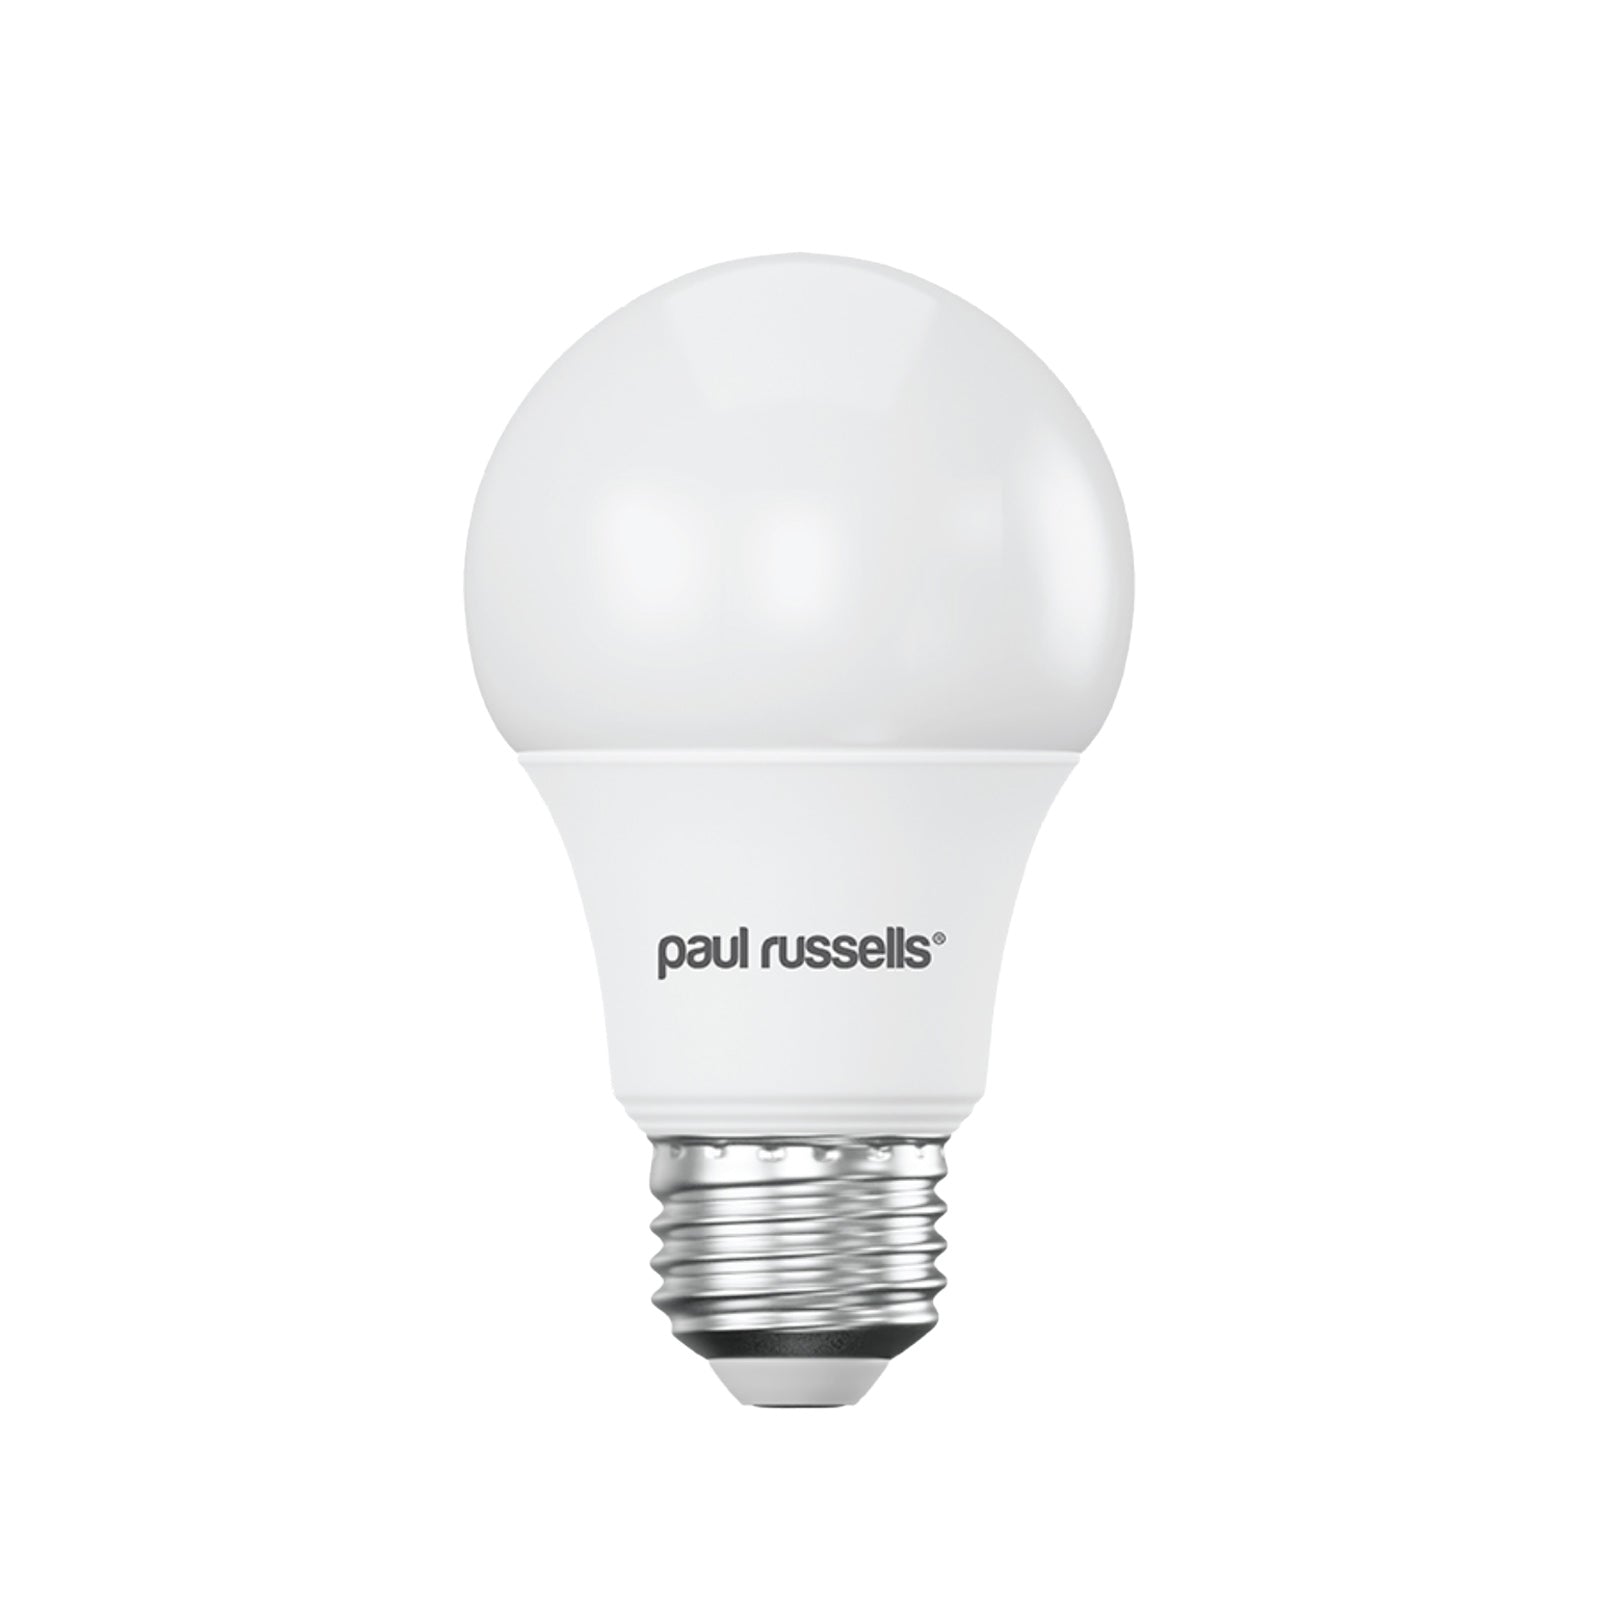 LED GLS 5W=35W Cool White Edison Screw Bulbs